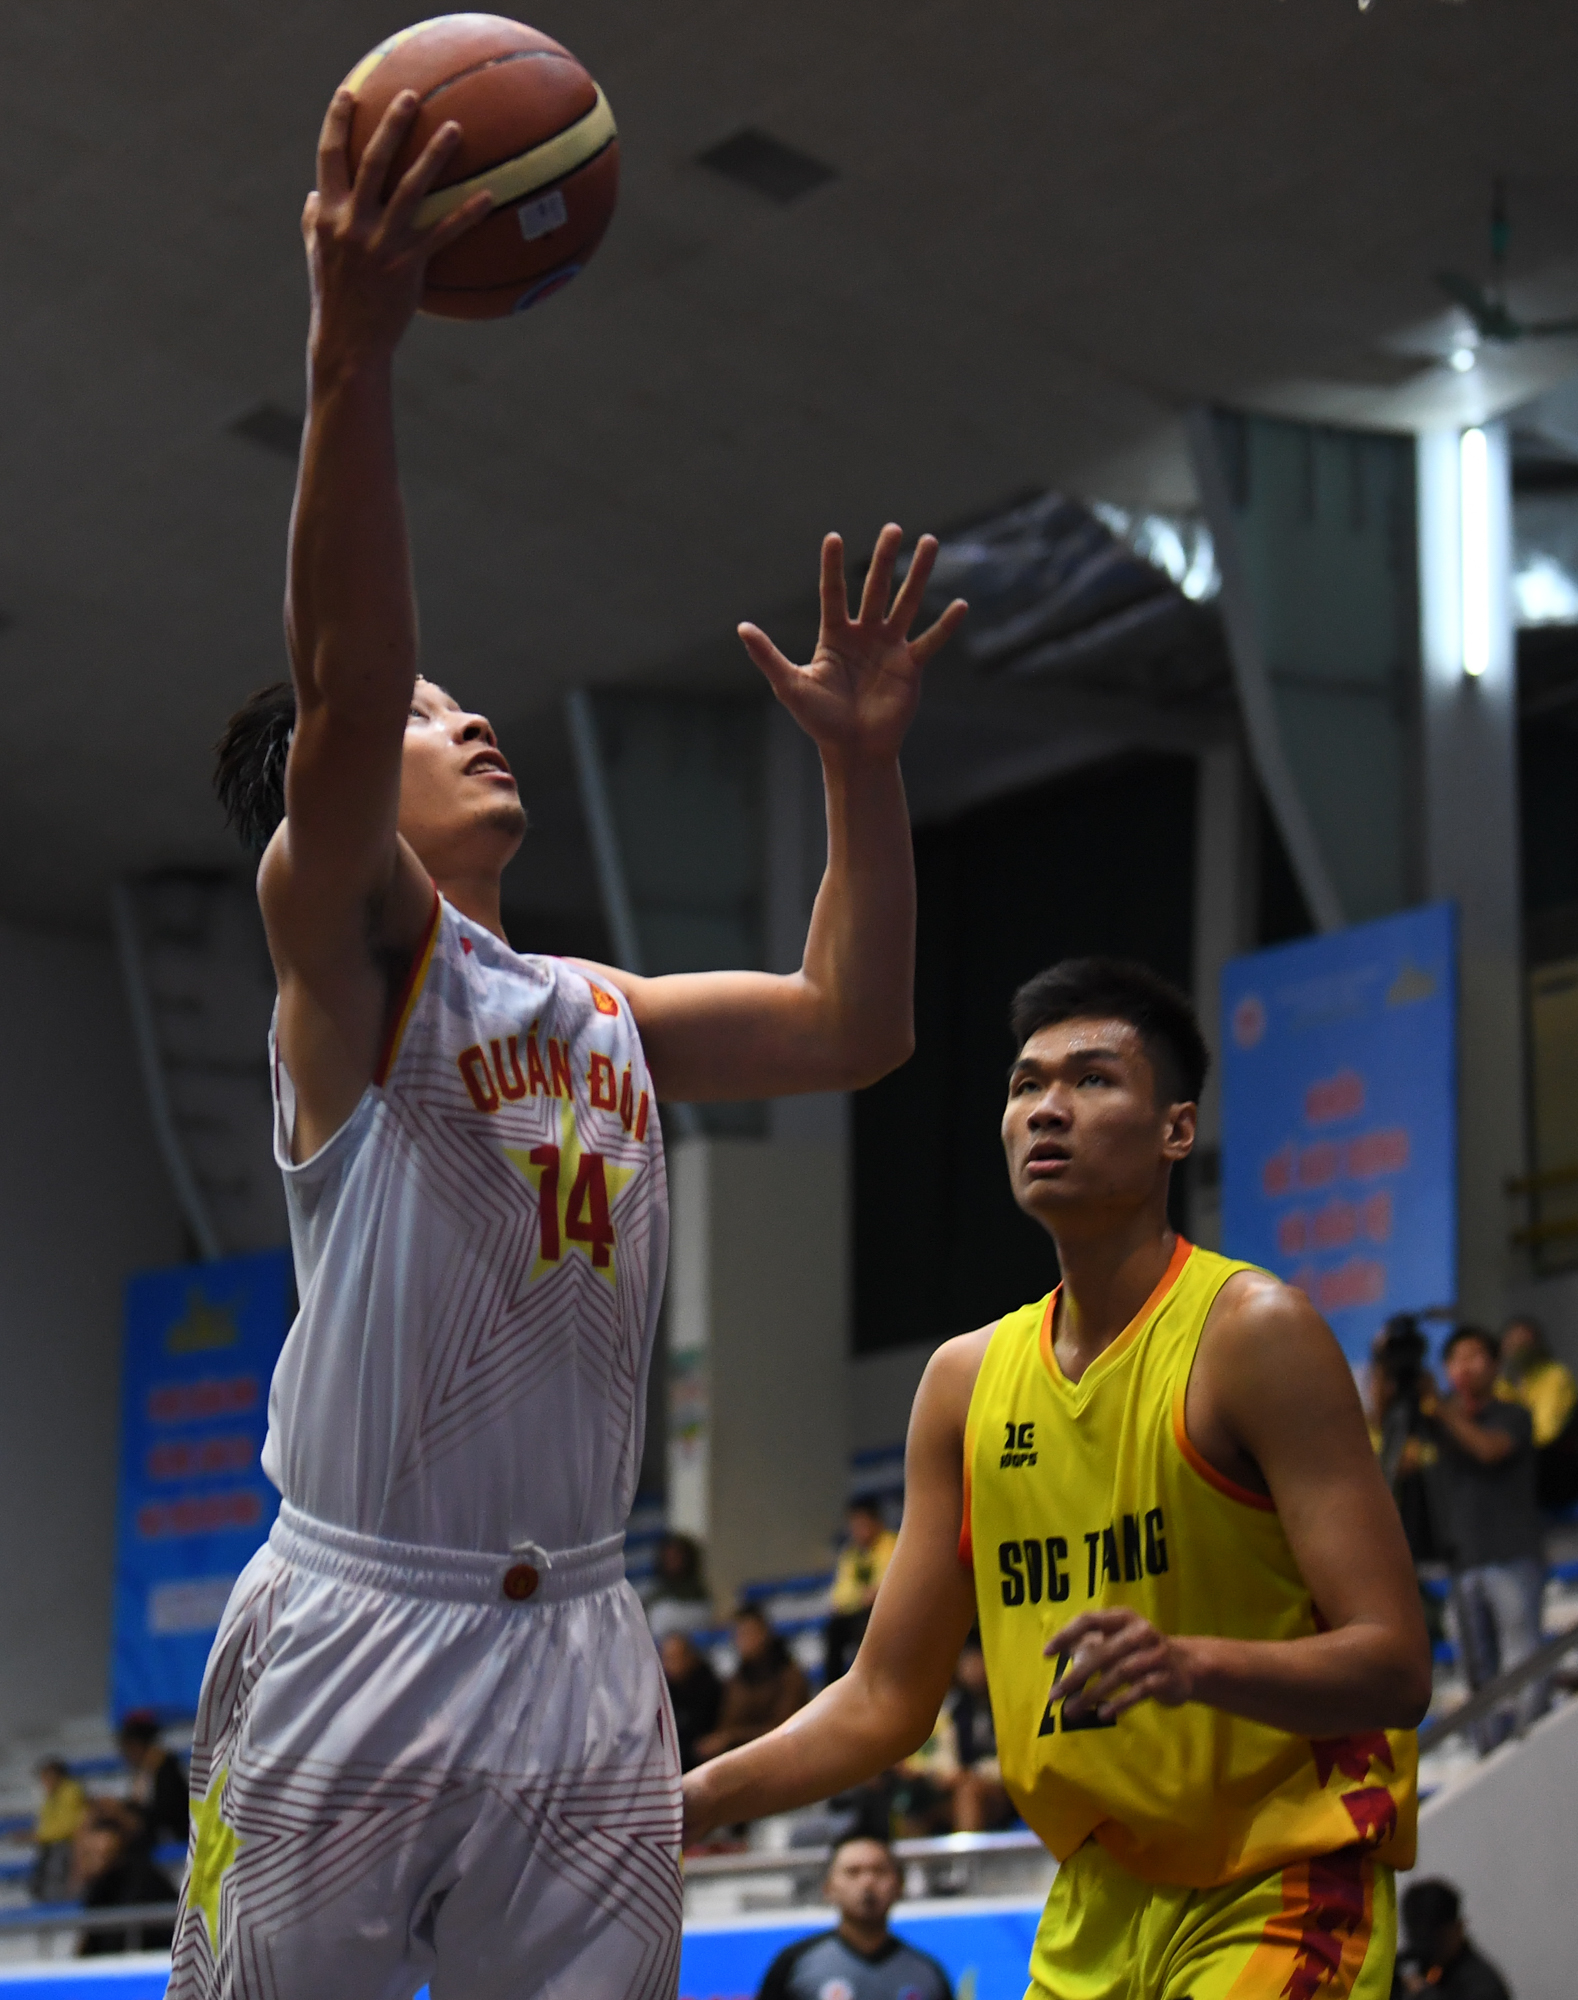 Bảo toàn chuỗi bất bại, Sóc Trăng vô địch bóng rổ nam 5x5 Đại hội Thể thao toàn quốc 2022 - Ảnh 3.